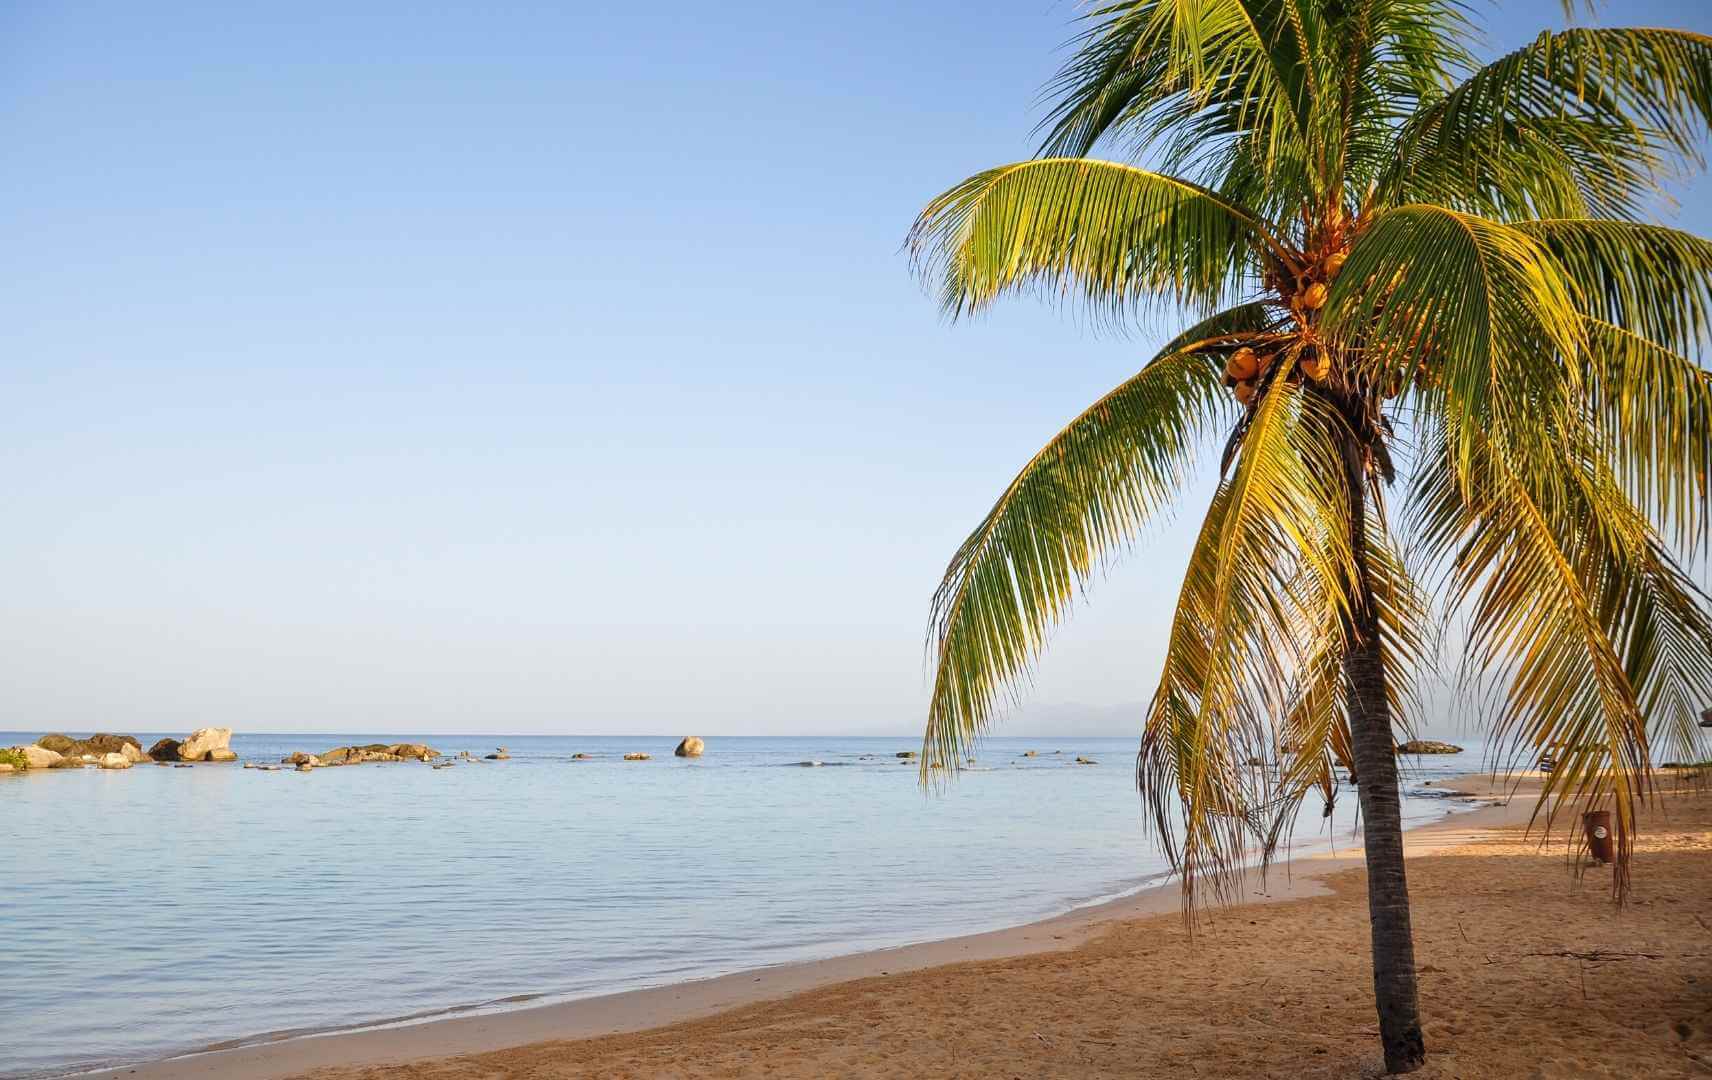 Palme und Strand in Kuba